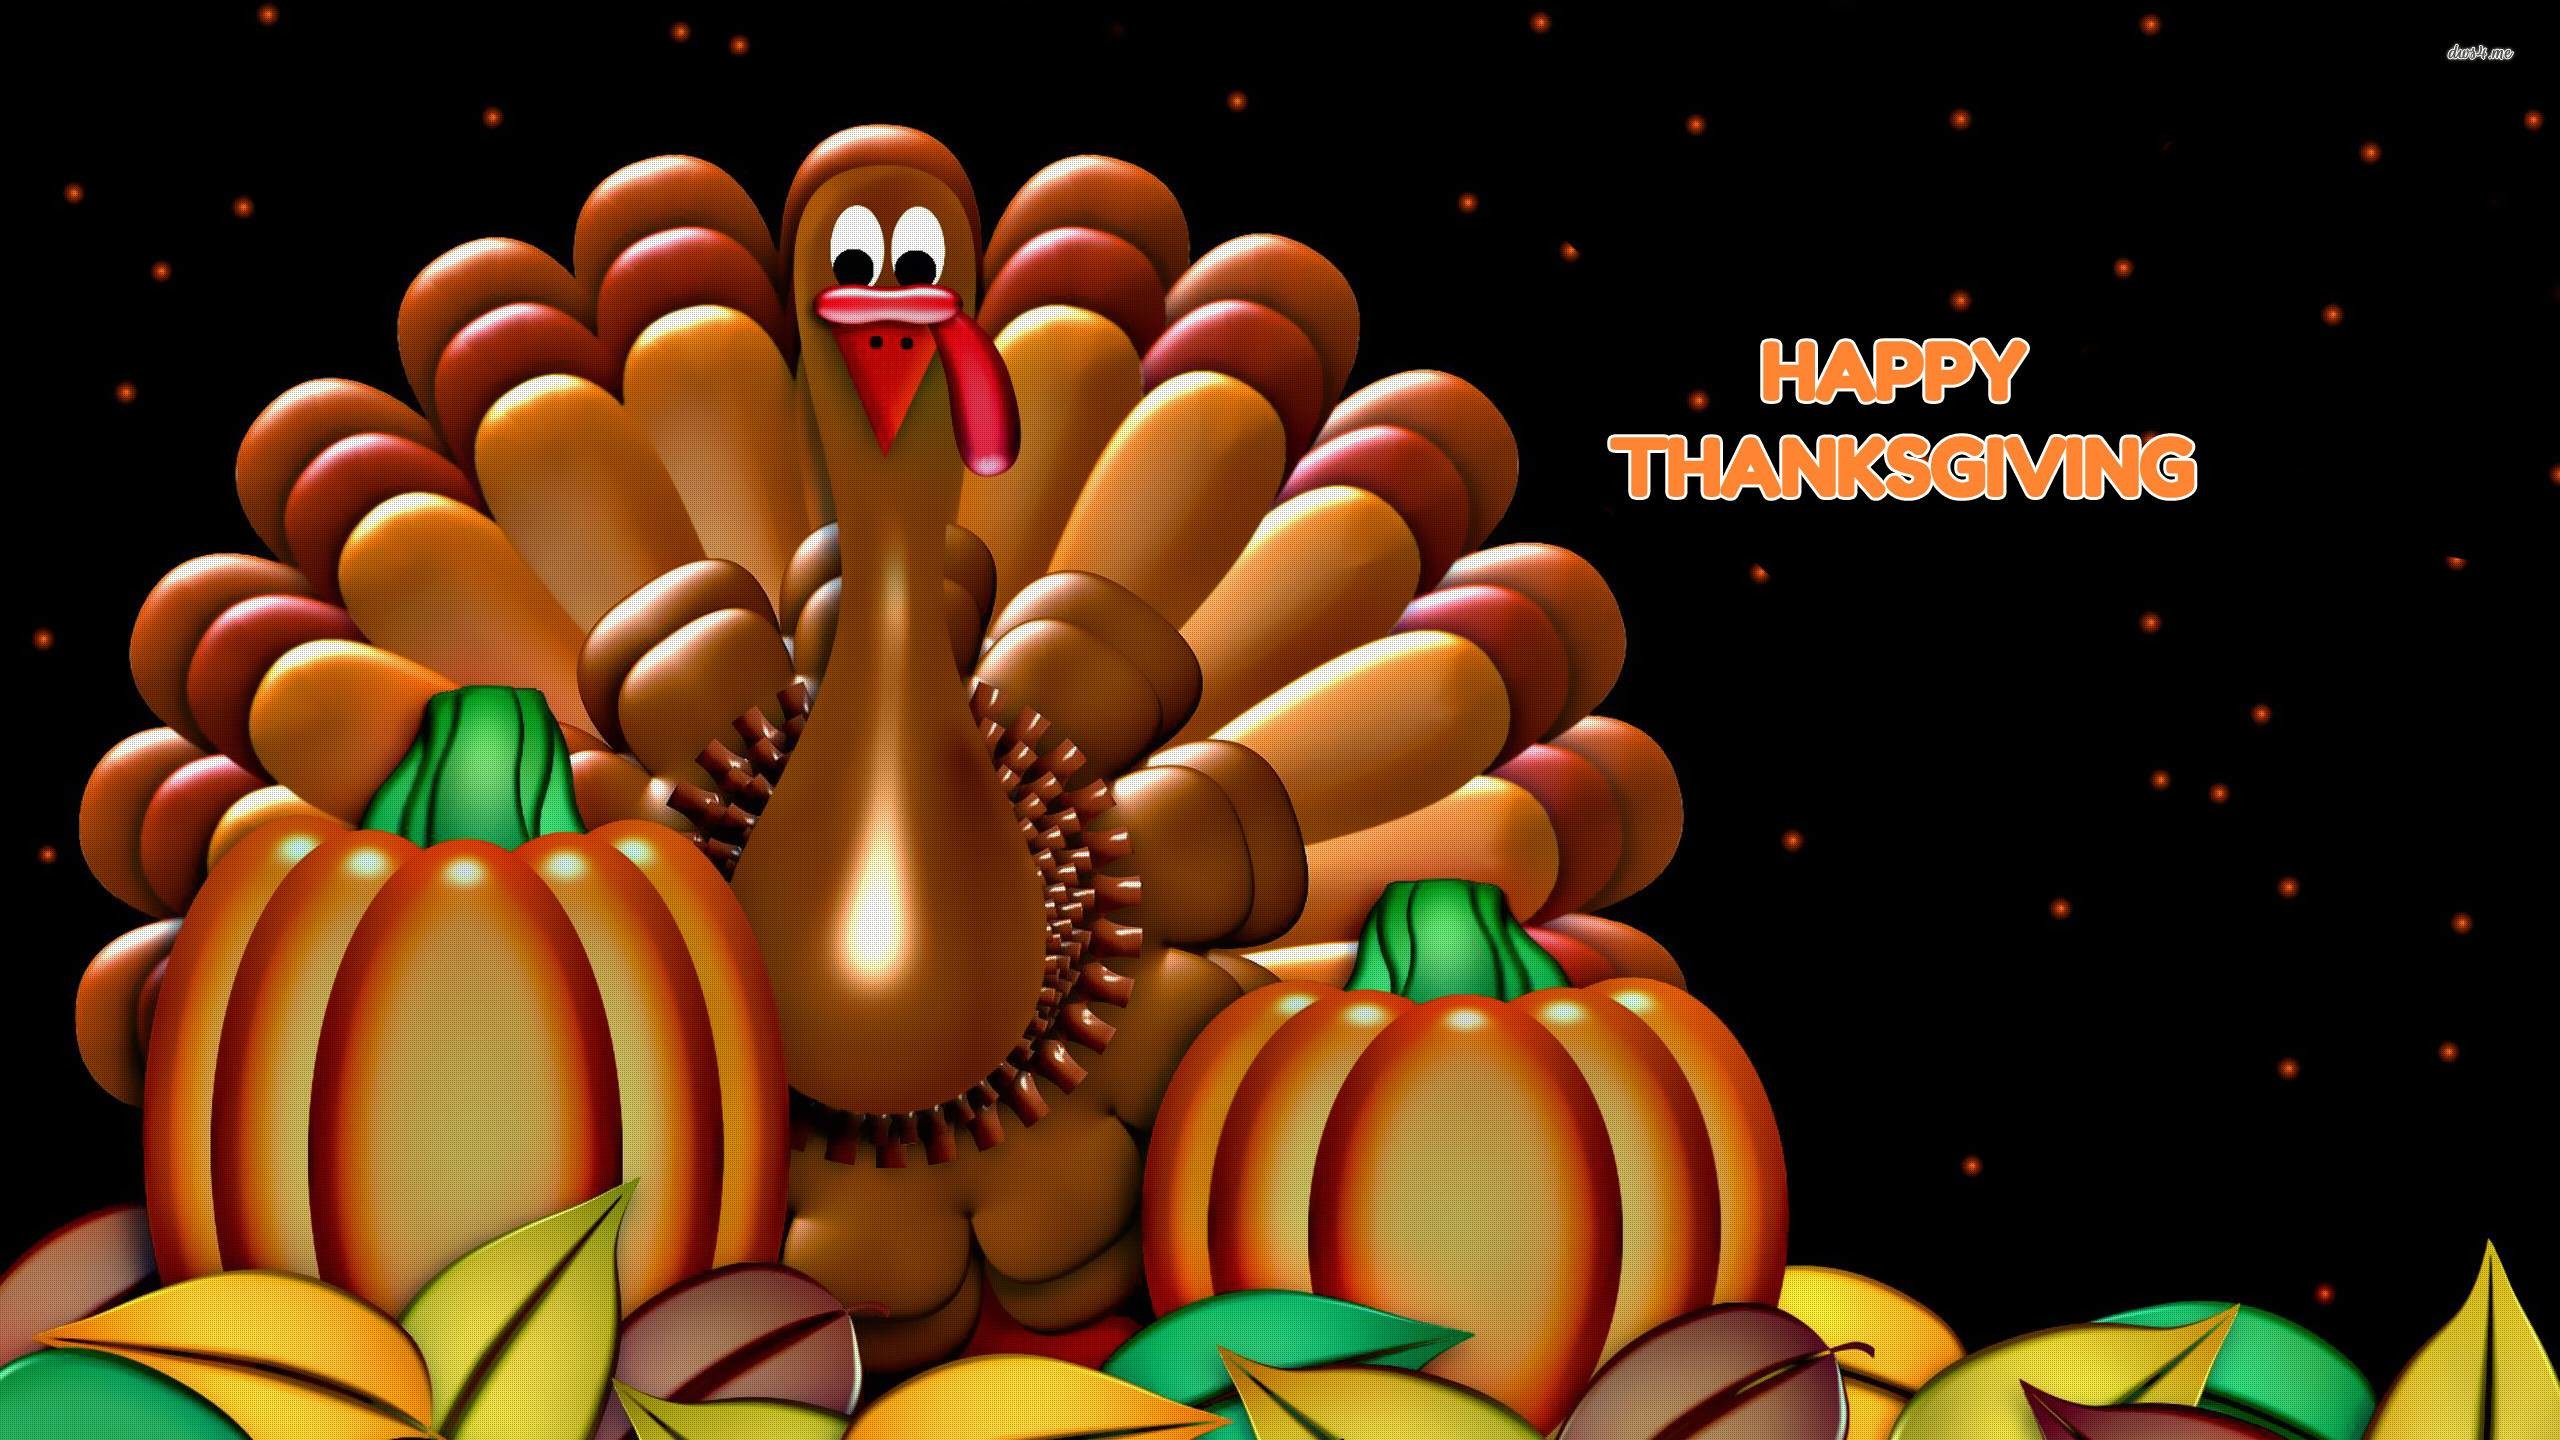 Desktop Thanksgiving Wallpaper Image